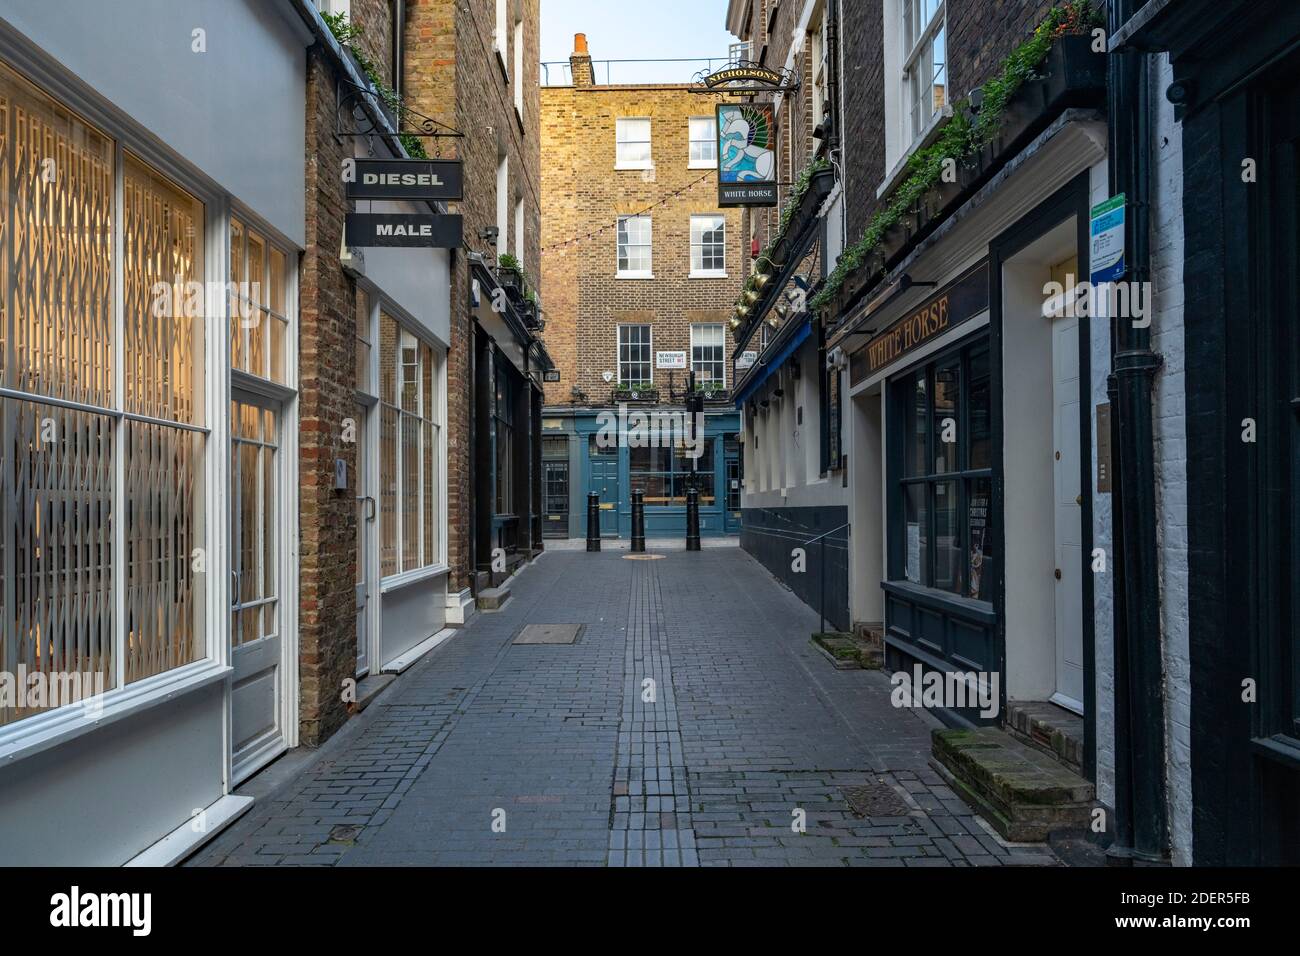 Leere Londoner Straßen während der Covid-19 Absperrung an der ruhigen, menschenleeren Carnaby Street in Soho, einem beliebten Touristengebiet während der globalen Pandemie Coronavirus Abschaltung in England, Europa Stockfoto